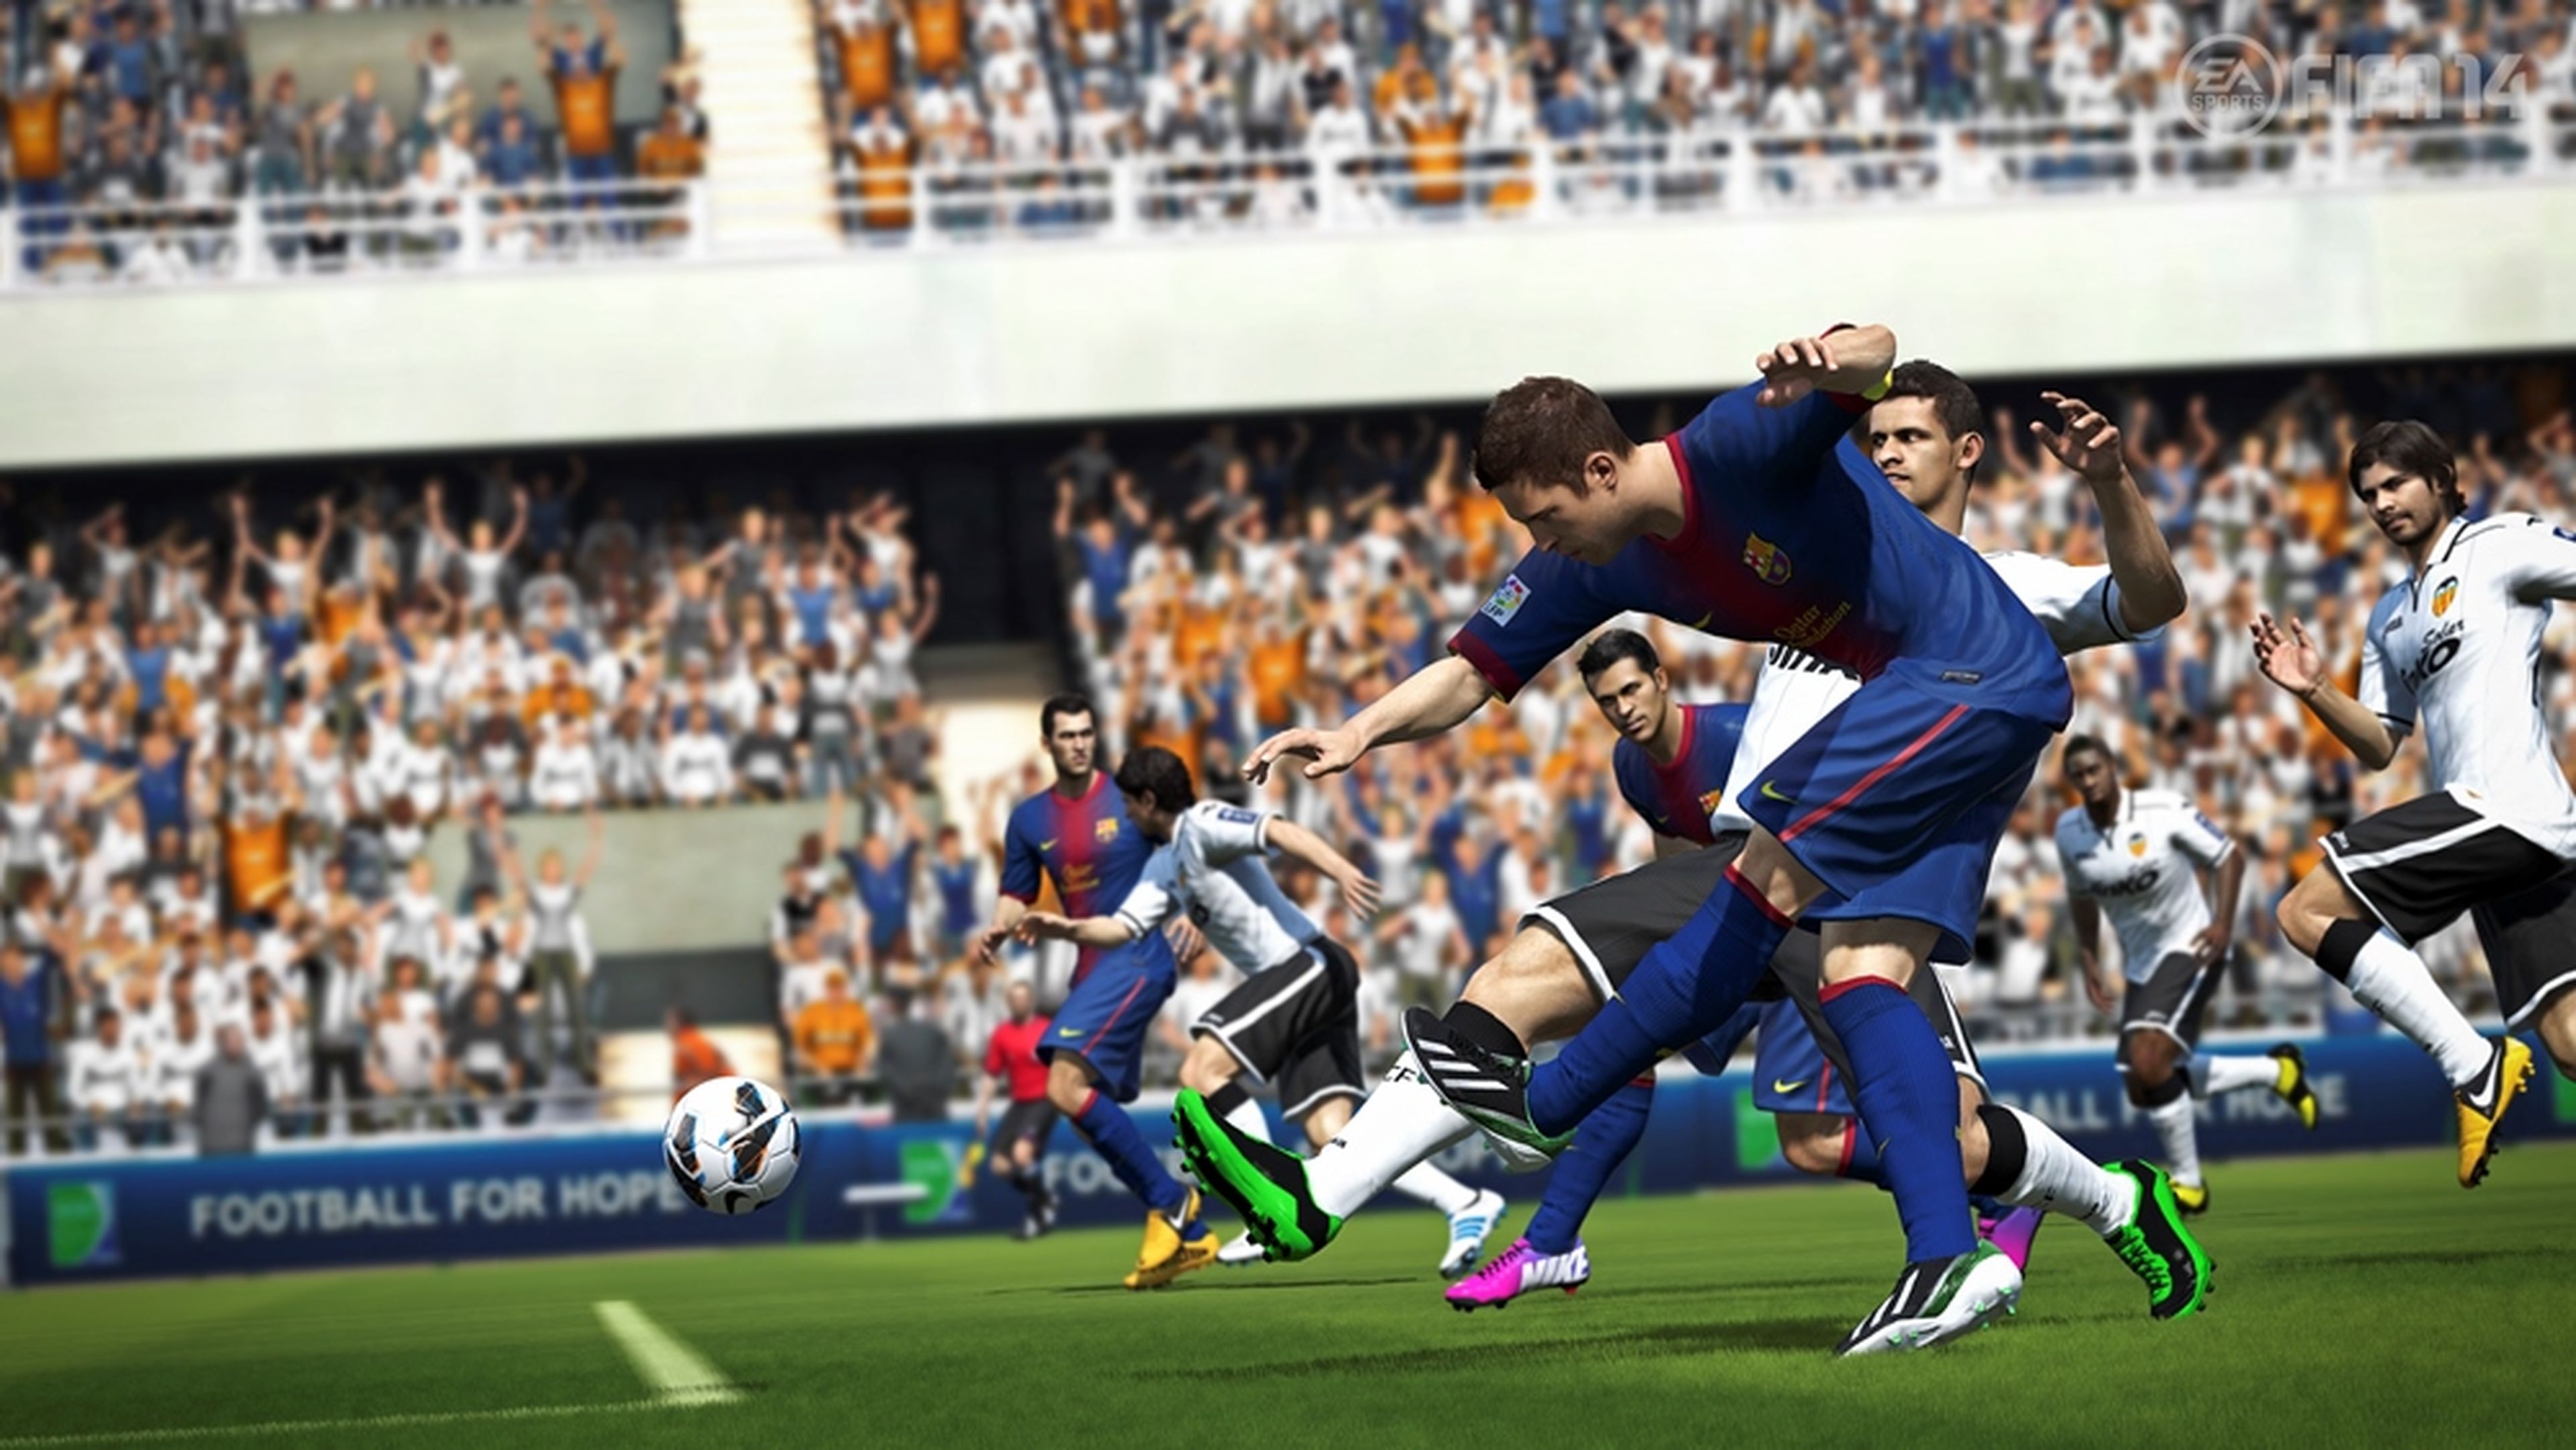 Comparativa de FIFA 14 y Pro Evolution Soccer 2014